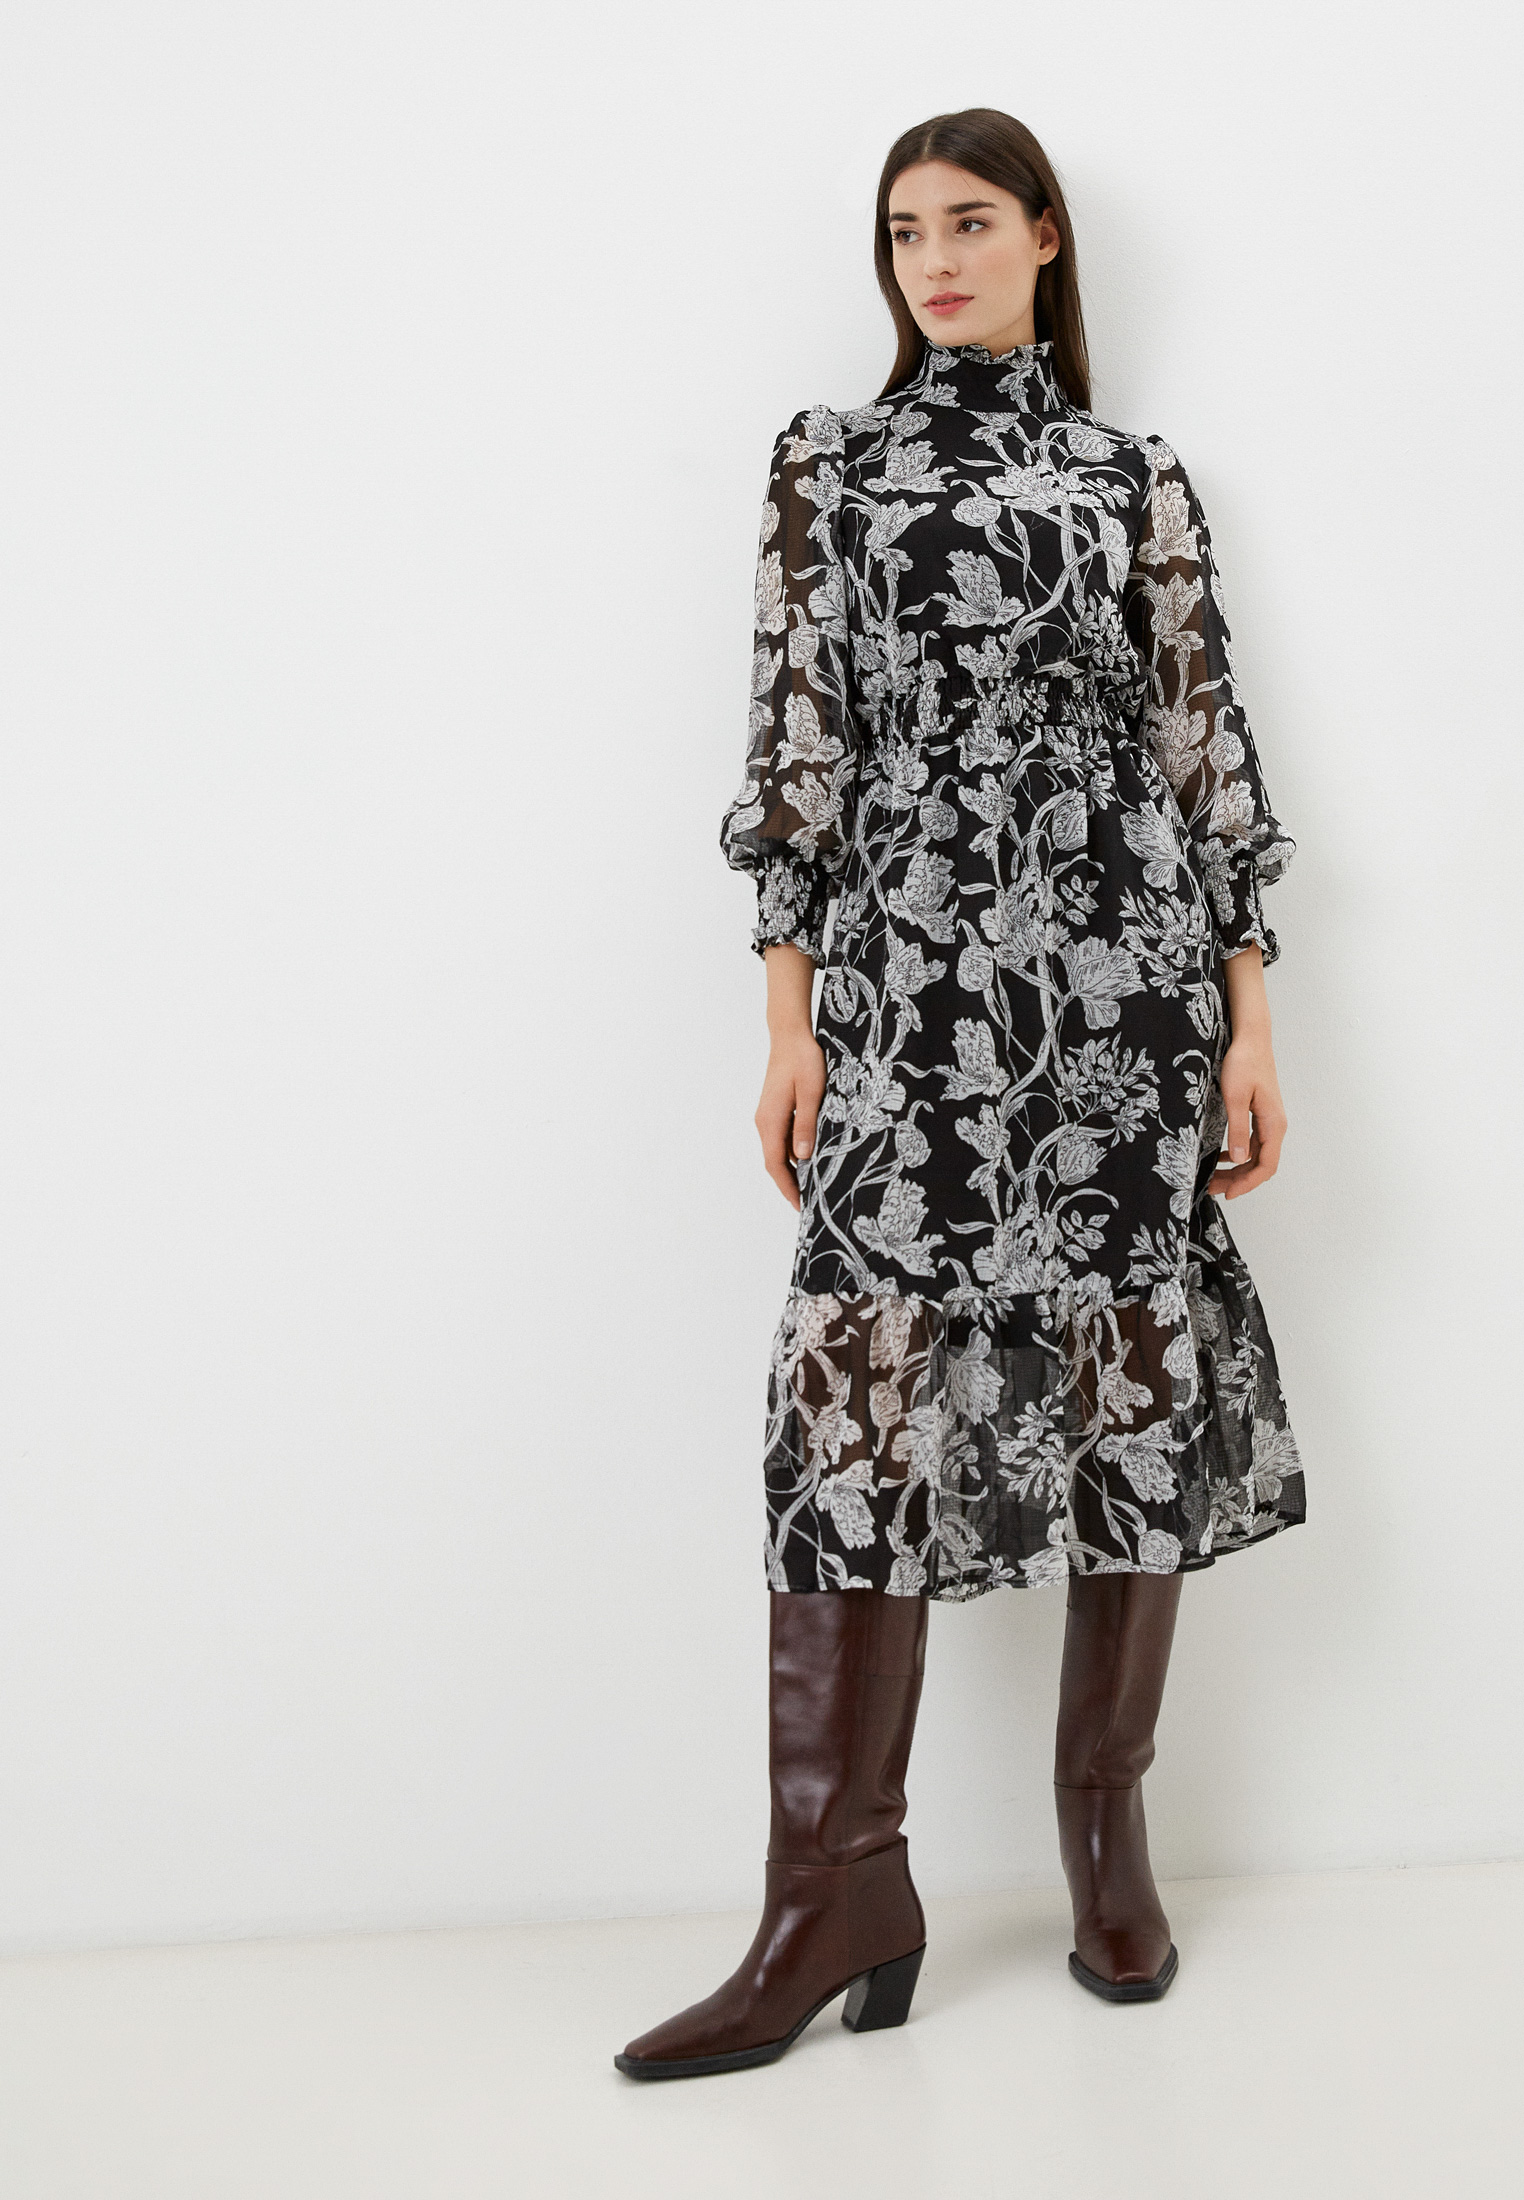 Платье Zibi London, цвет: черный, RTLAAZ107901 — купить в интернет-магазине Lamoda